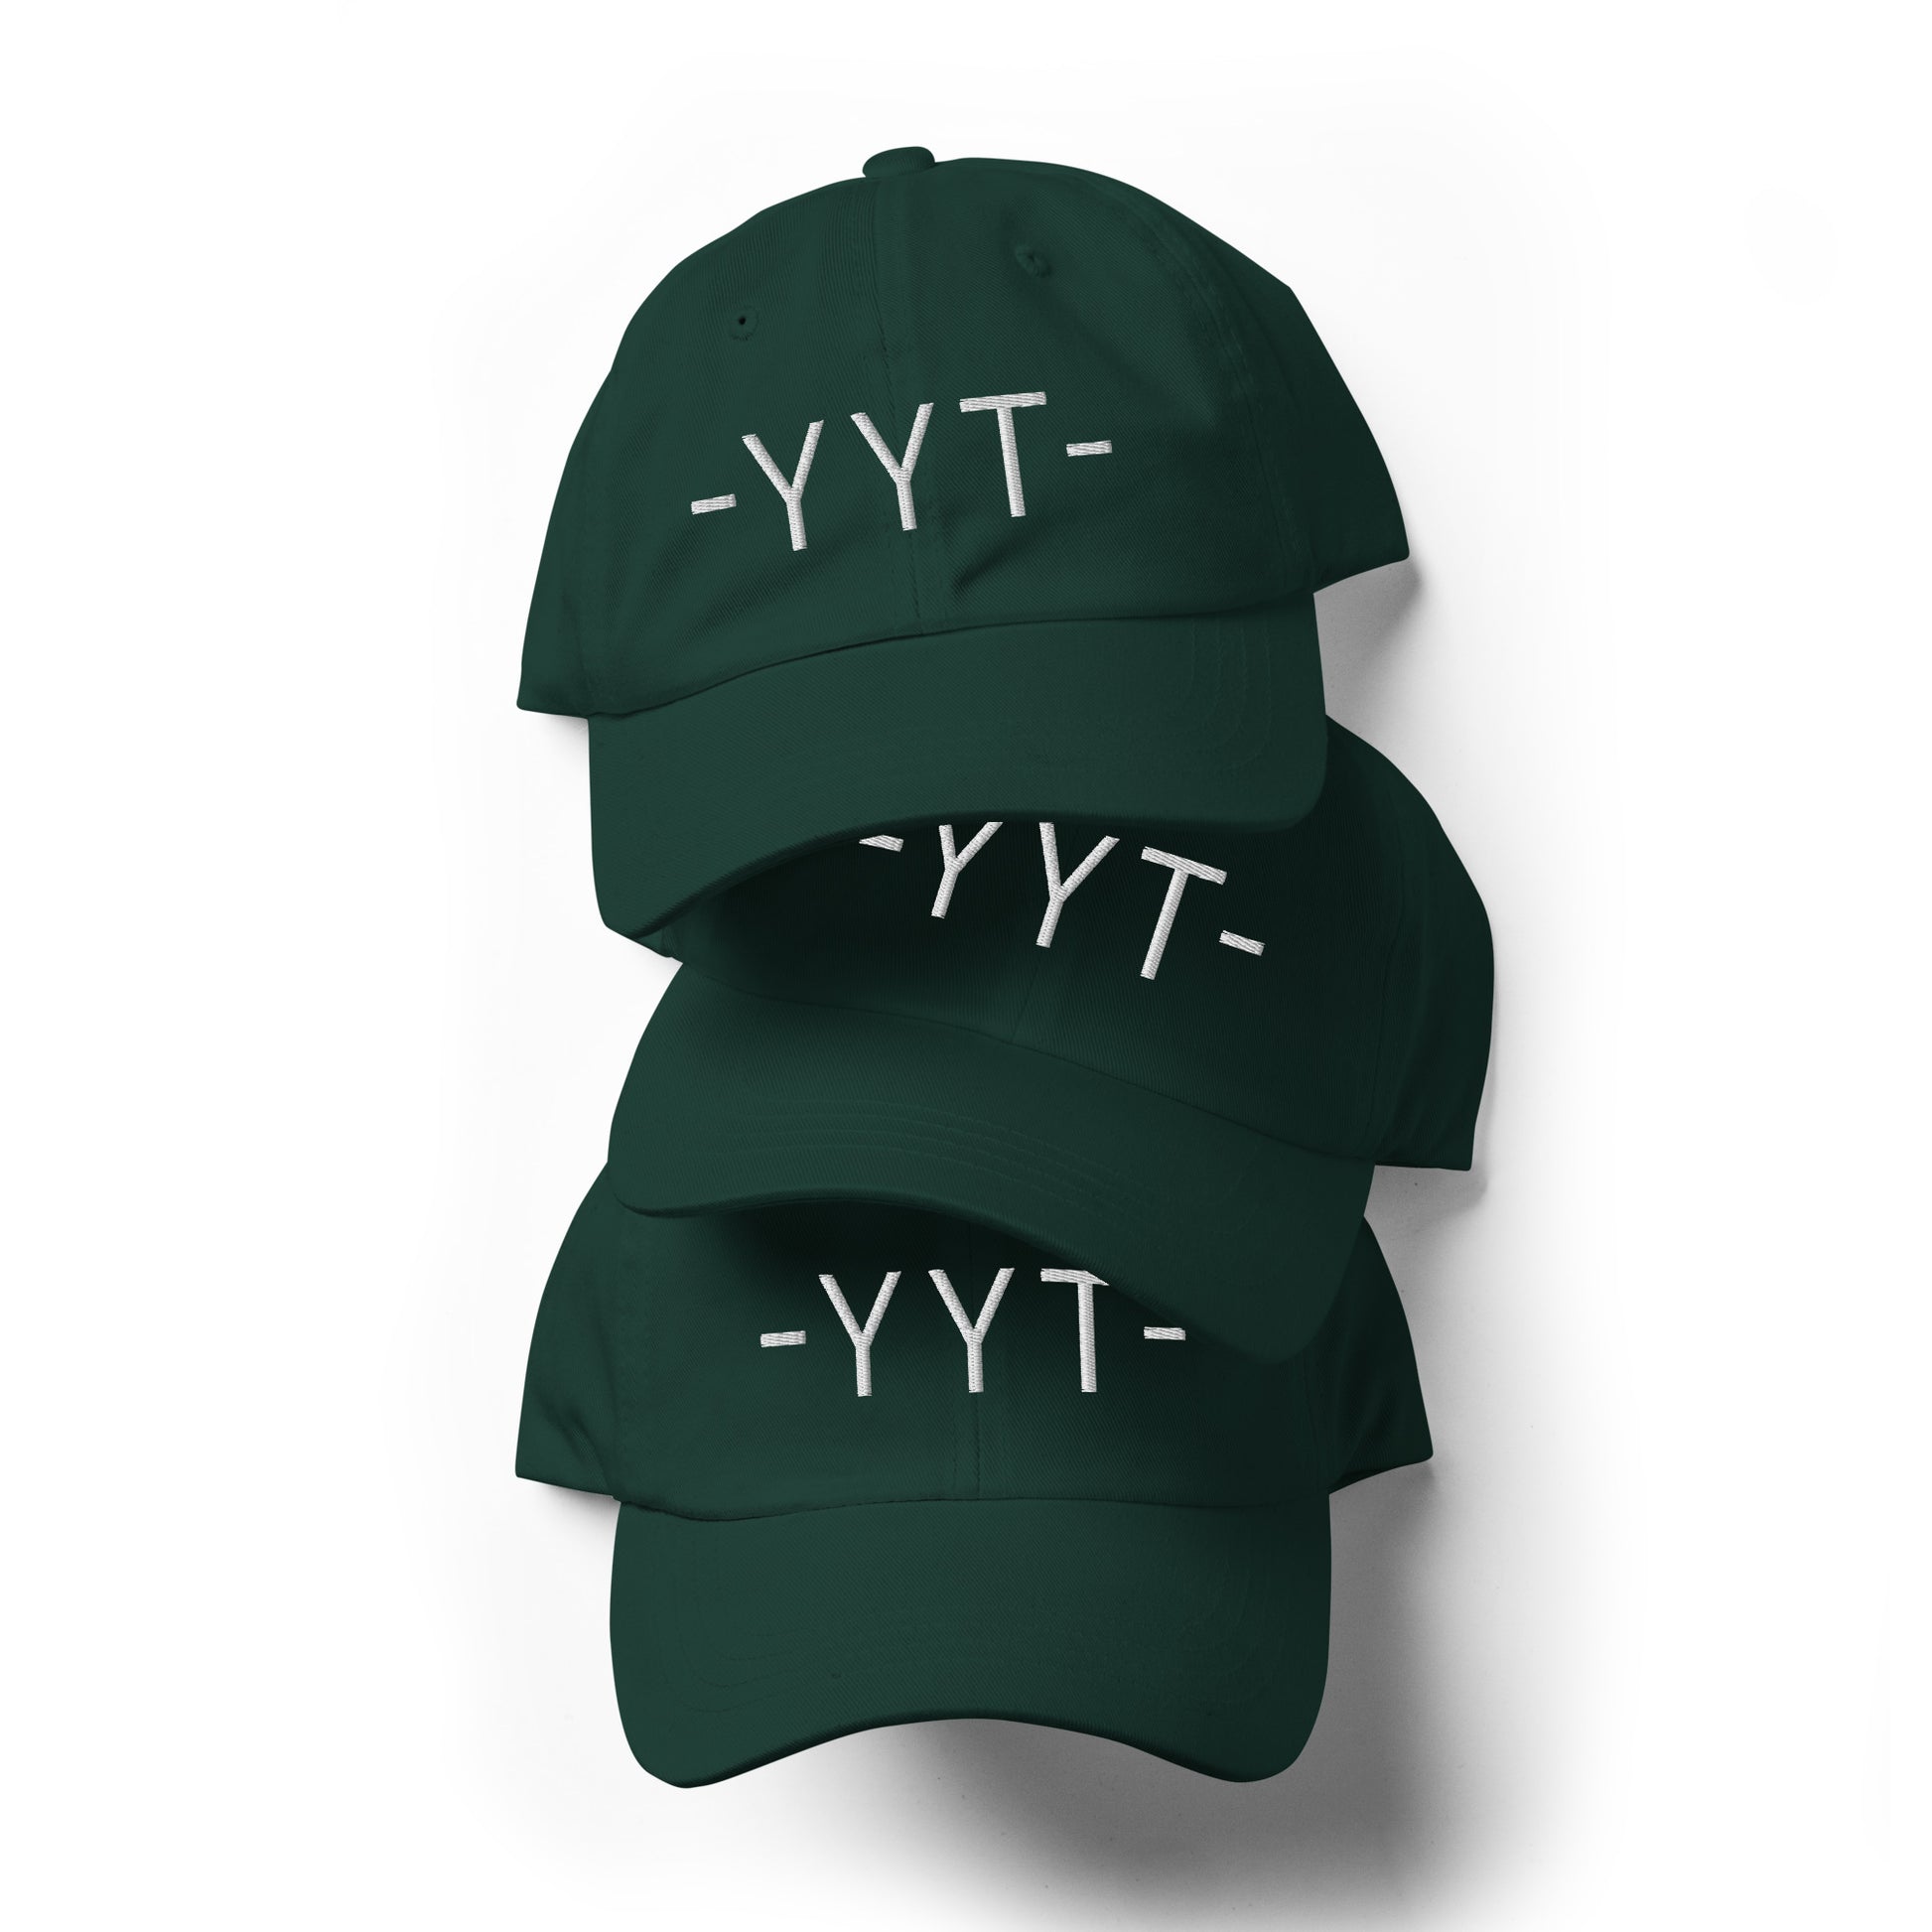 Souvenir Baseball Cap - White • YYT St. John's • YHM Designs - Image 05